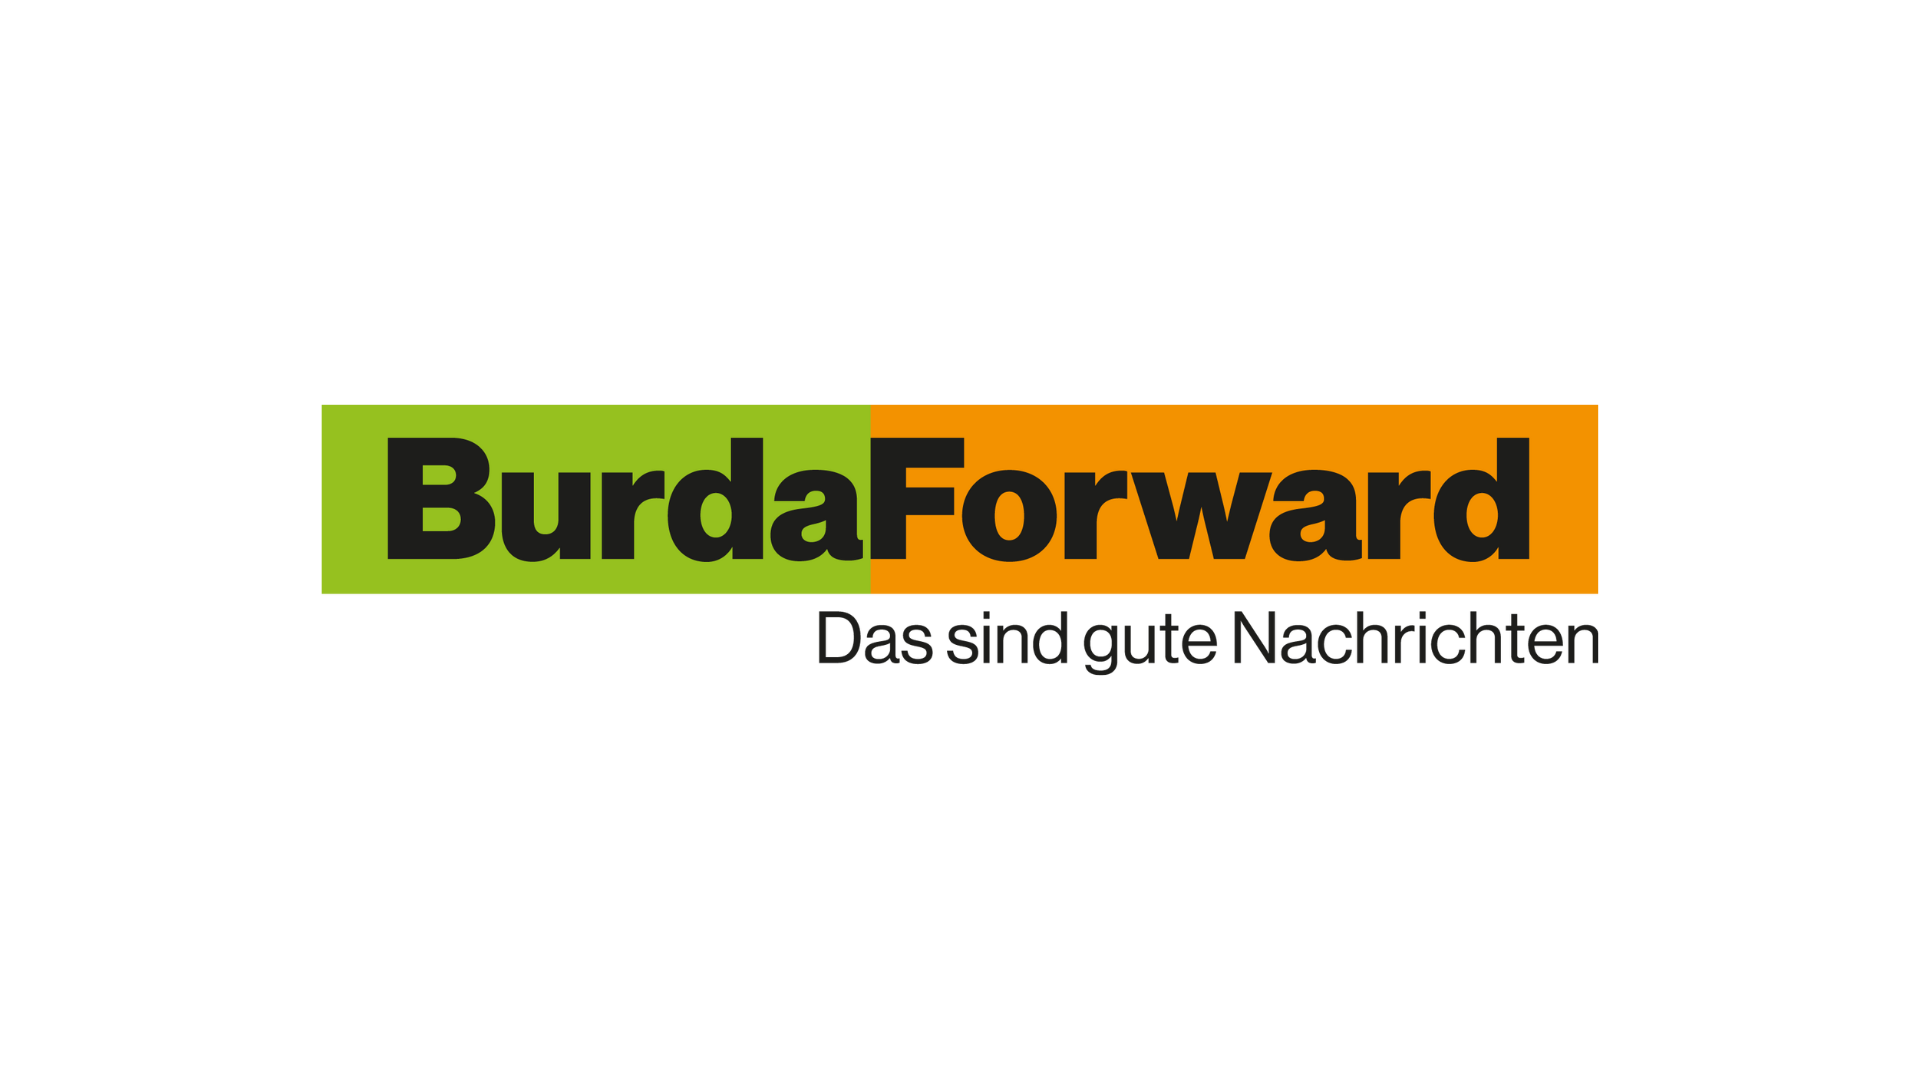 BF_Mediathek_BurdaForward-1